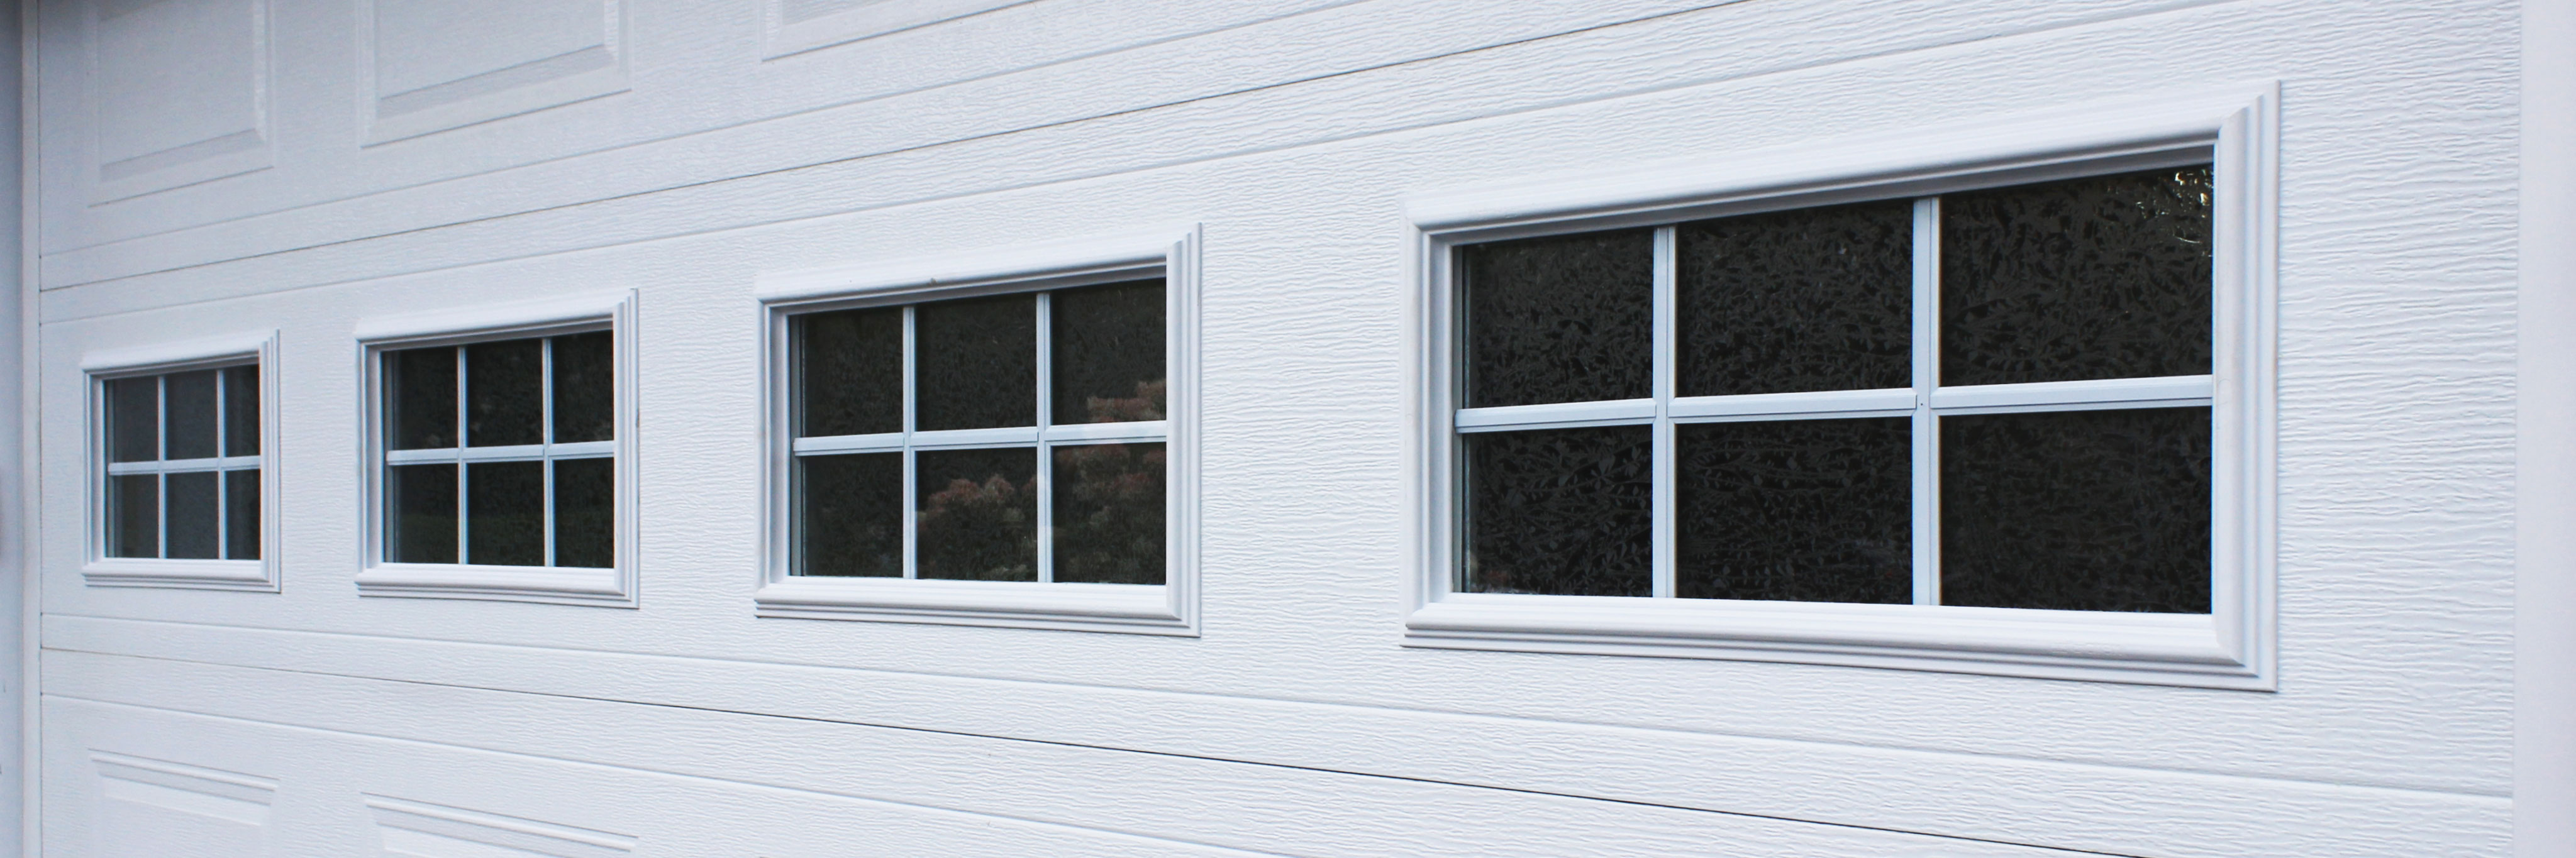 Thermal Windows To Your Garage Door, Clopay Garage Door Window Inserts Home Depot